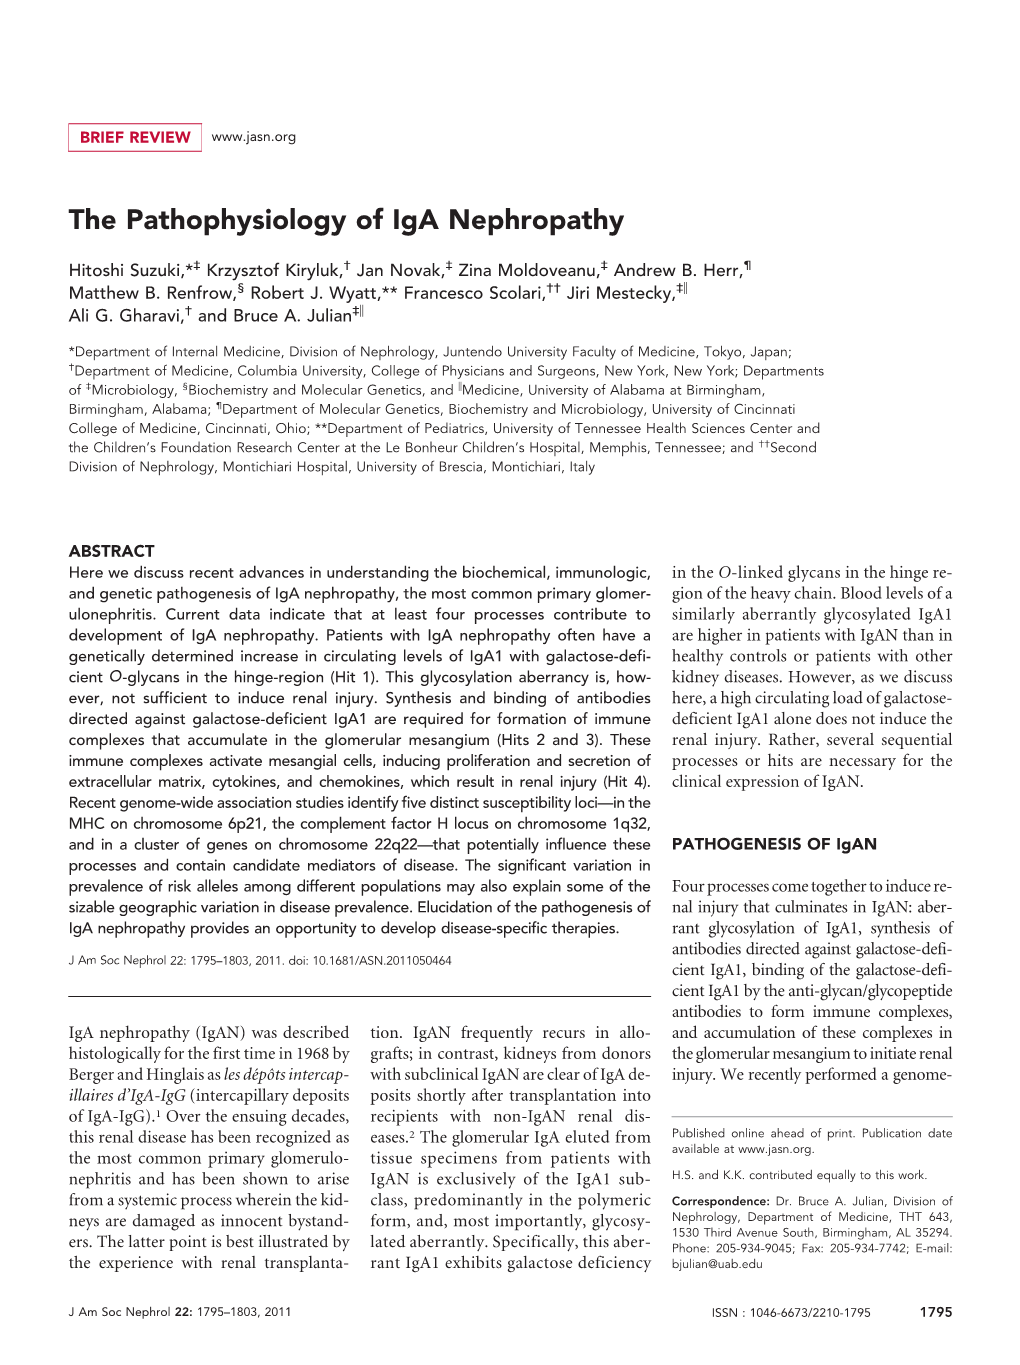 The Pathophysiology of Iga Nephropathy